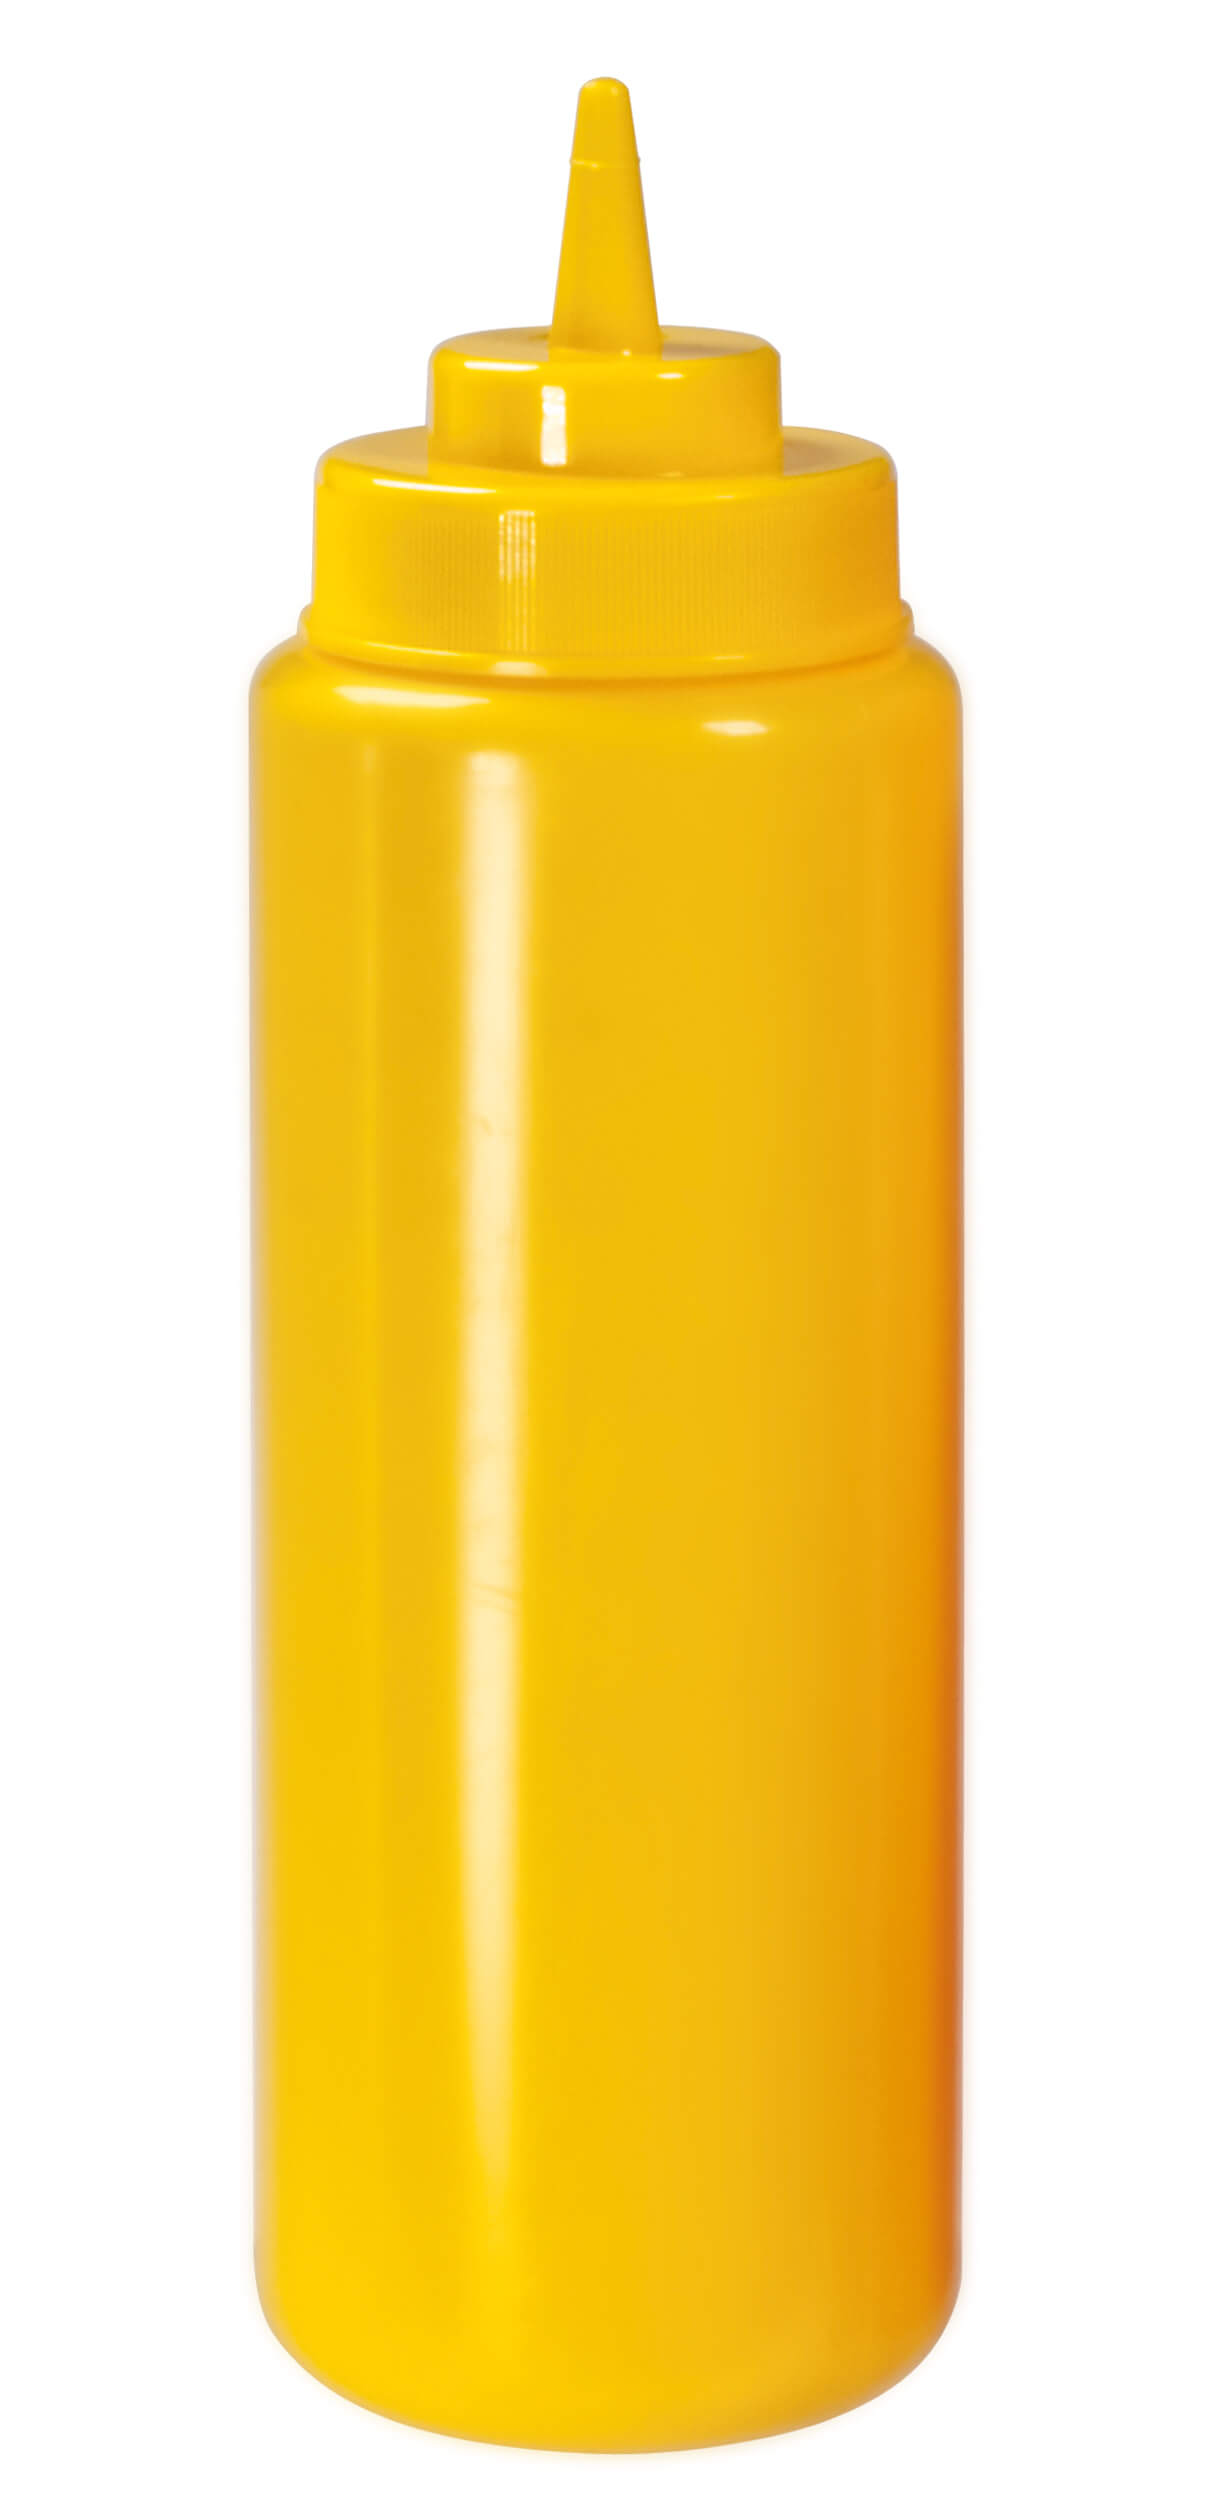 Quetschflasche, große Öffnung, 950ml - gelb